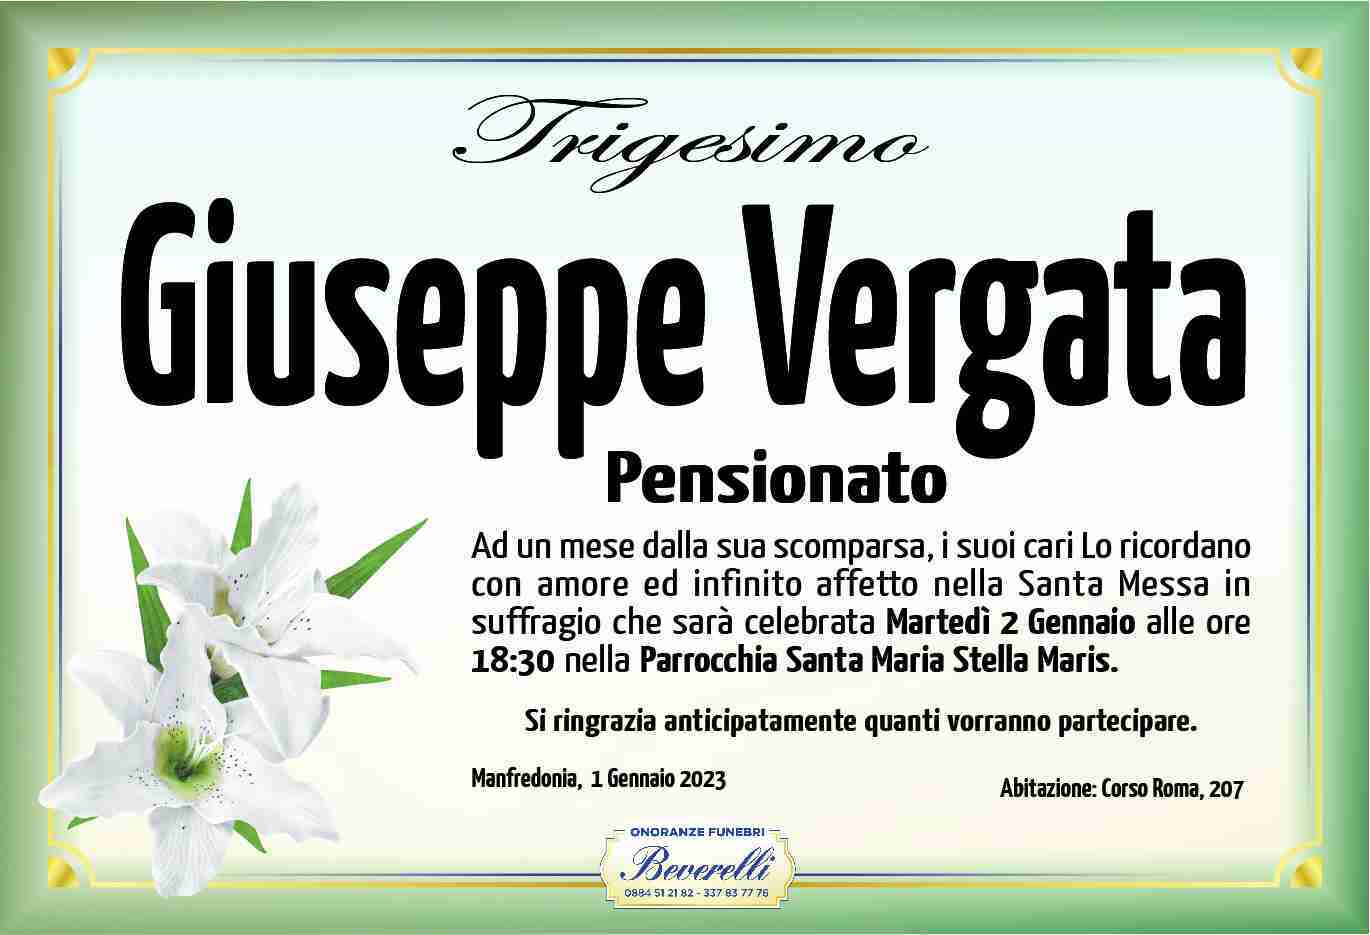 Giuseppe Vergata